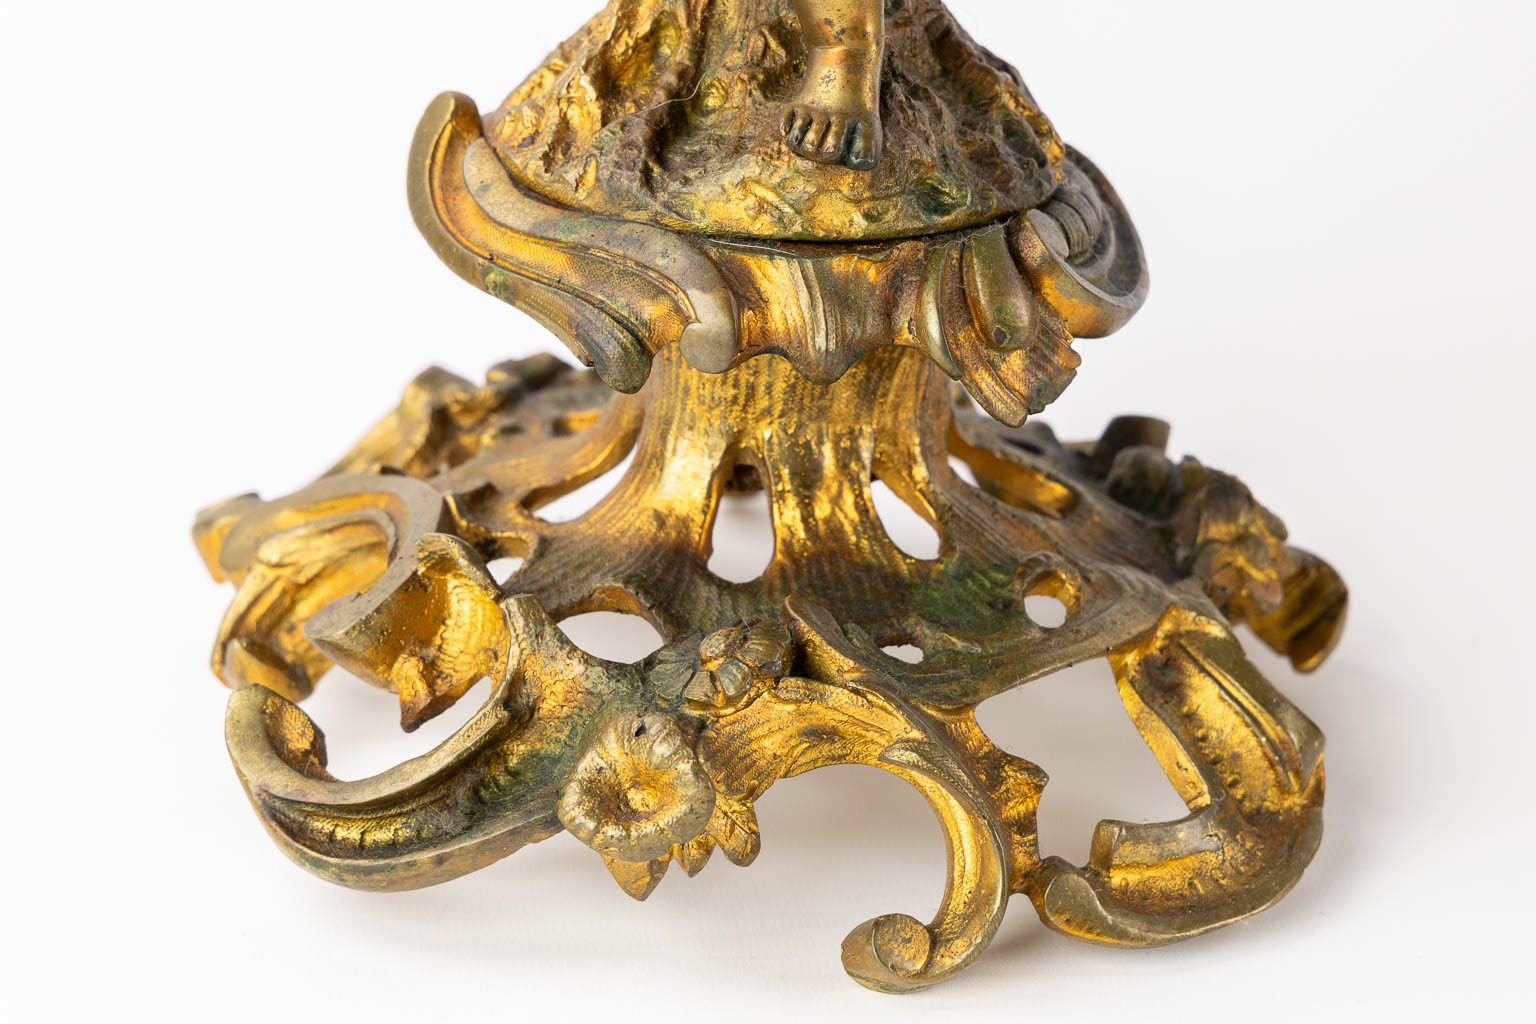 A three-piece mantle garniture clock and candelabra, gilt bronze. 19th C. (L:21 x W:55 x H:48 cm)